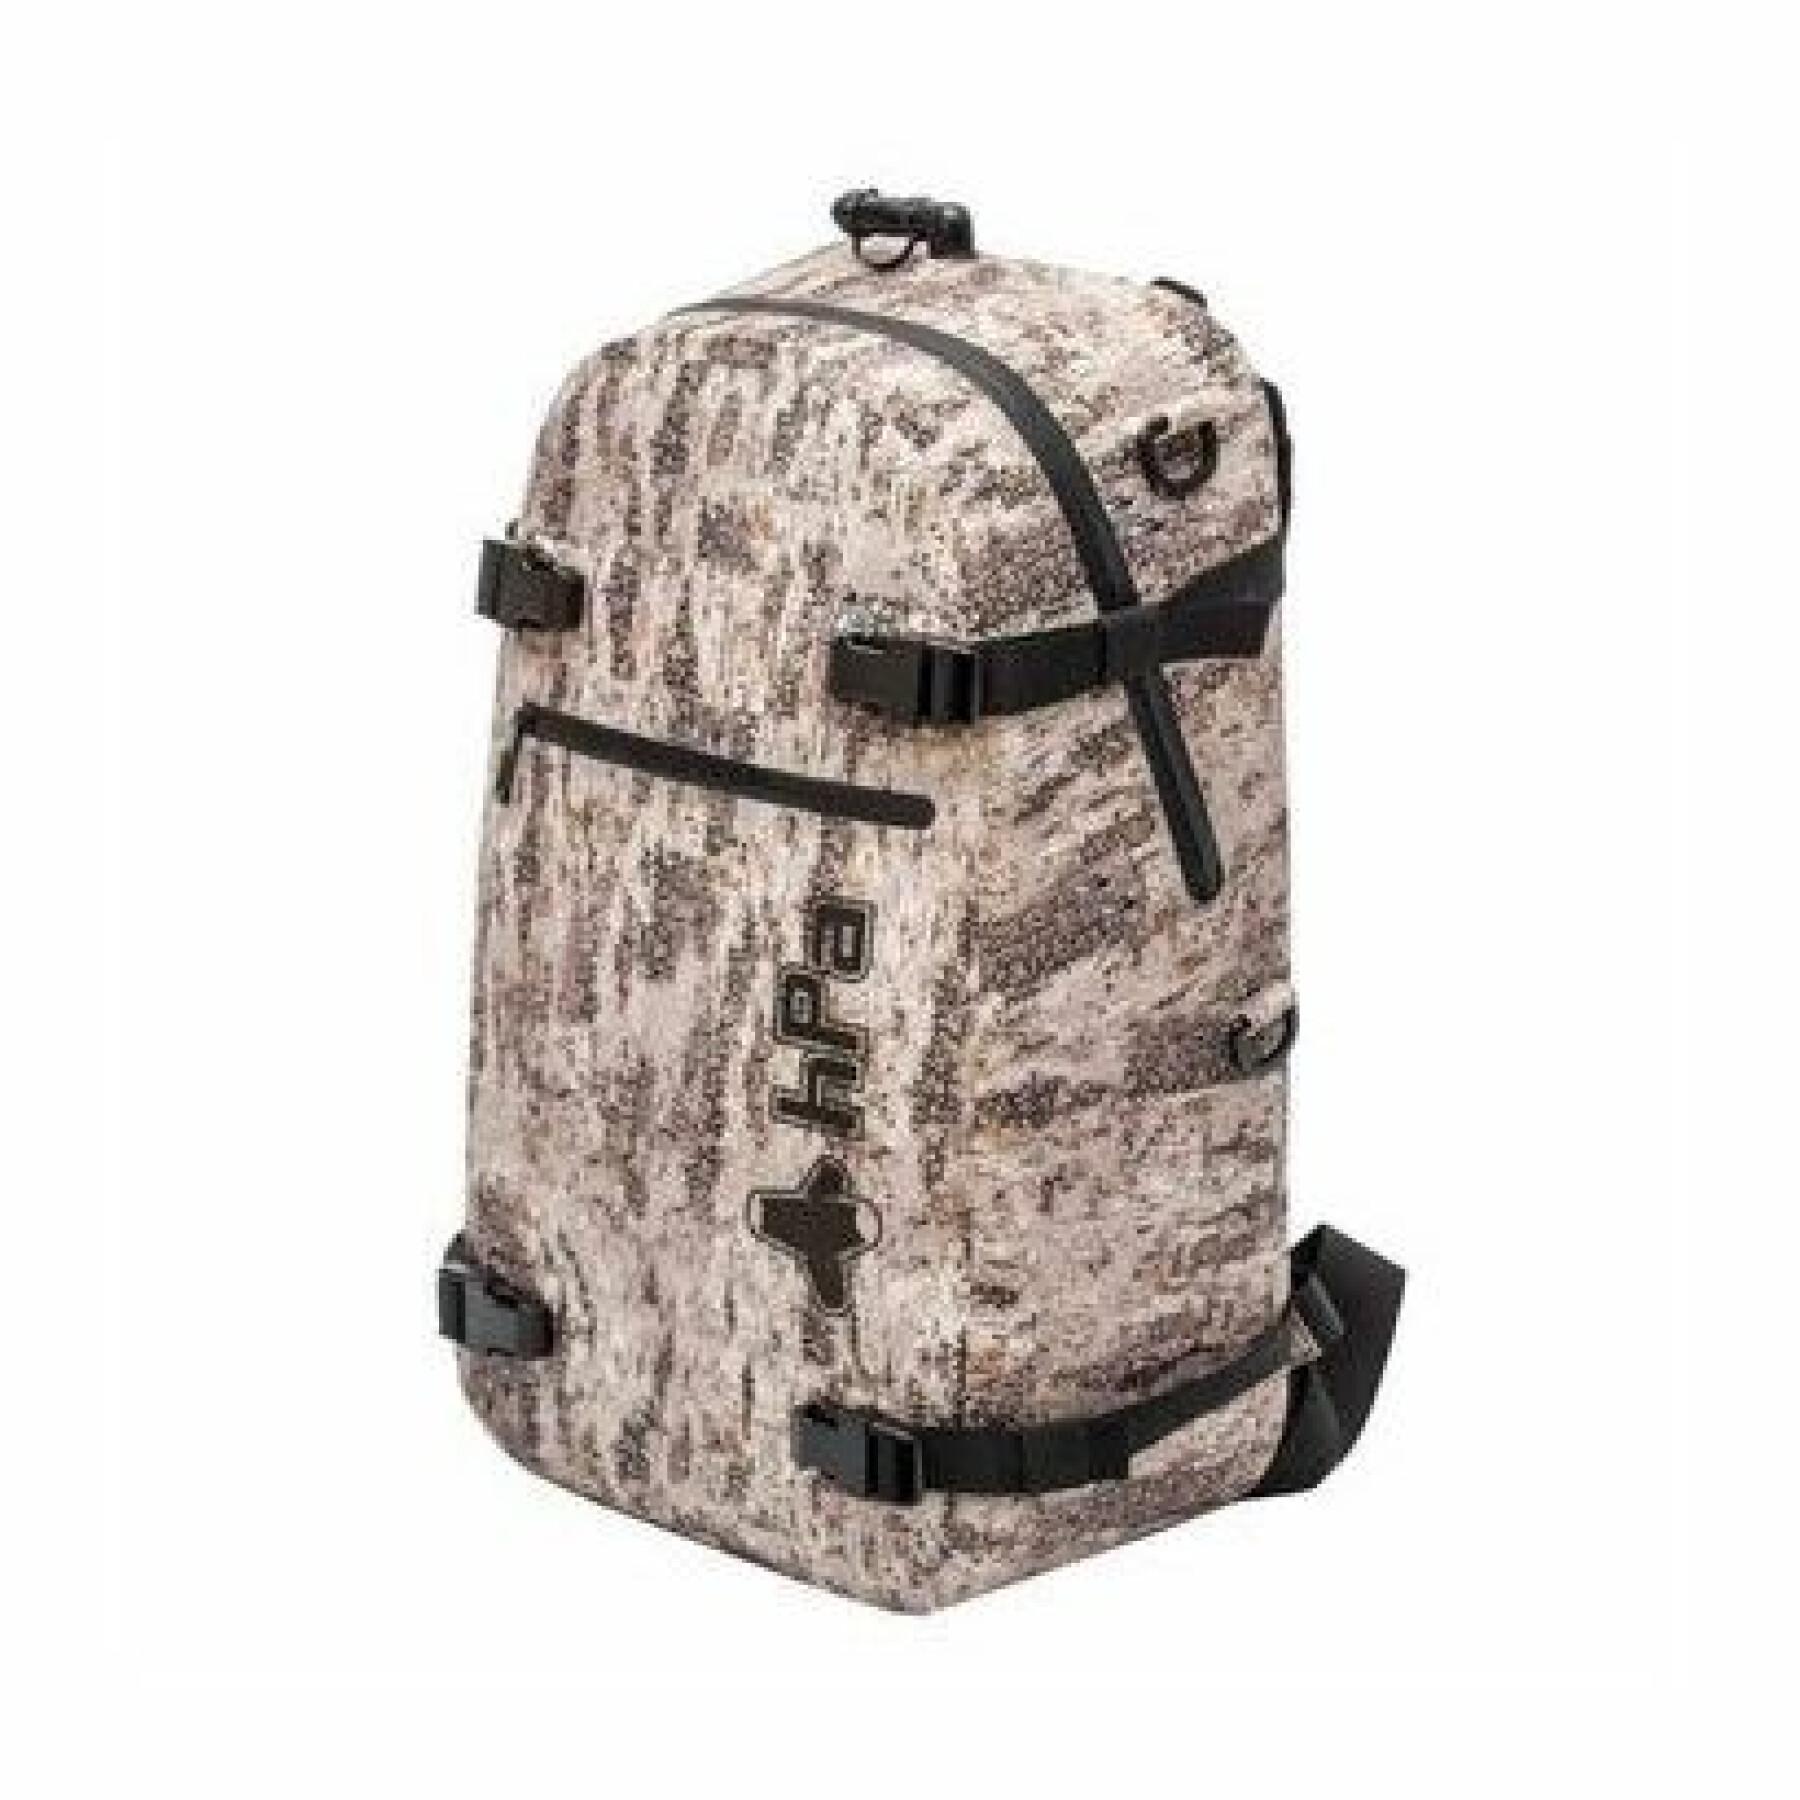 Waterproof backpack HPA